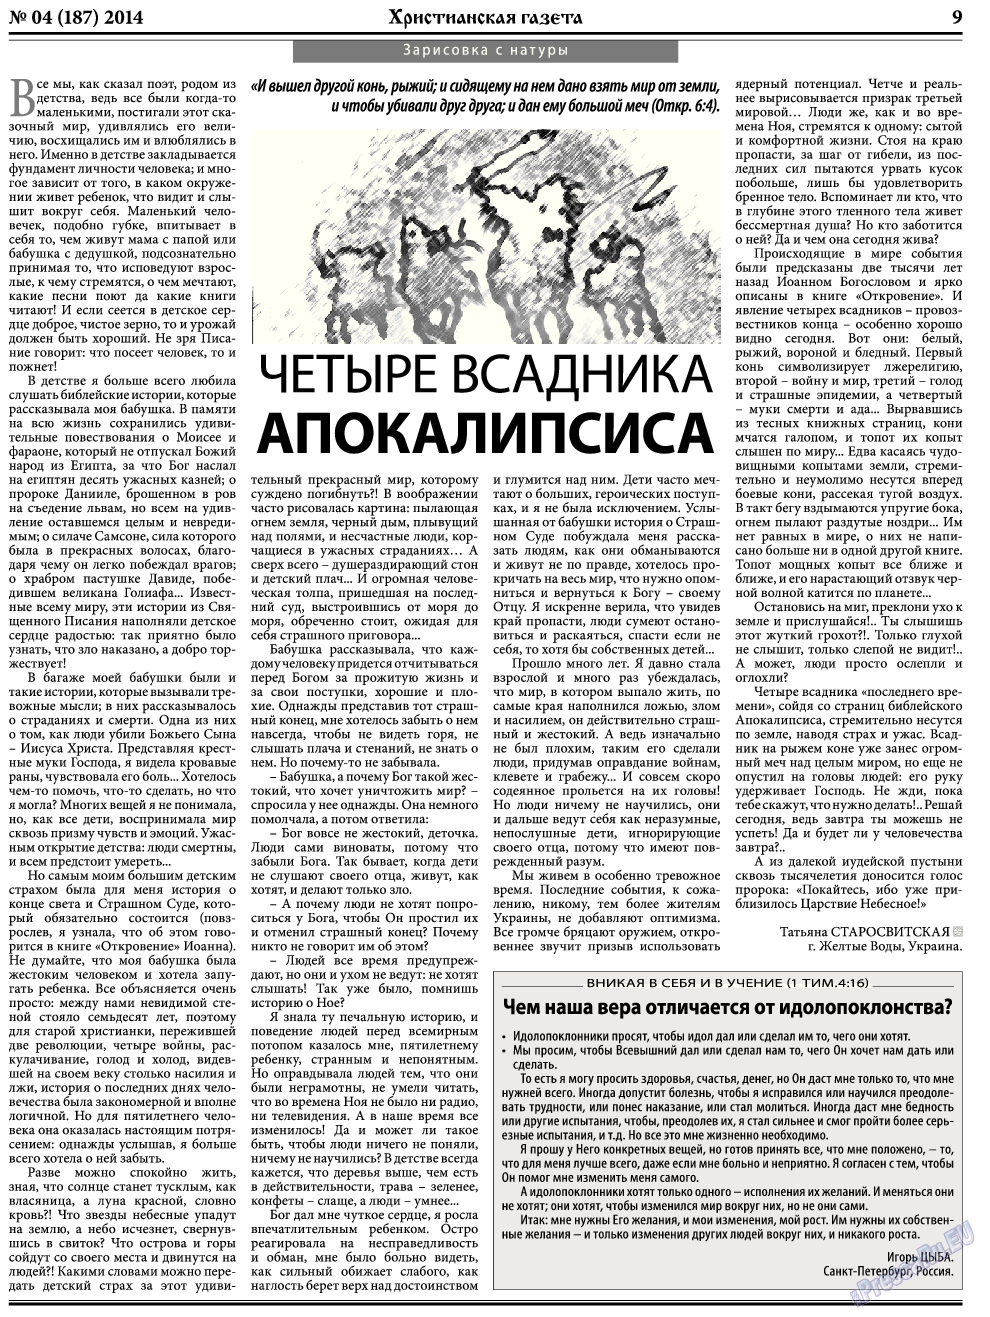 Христианская газета, газета. 2014 №4 стр.9